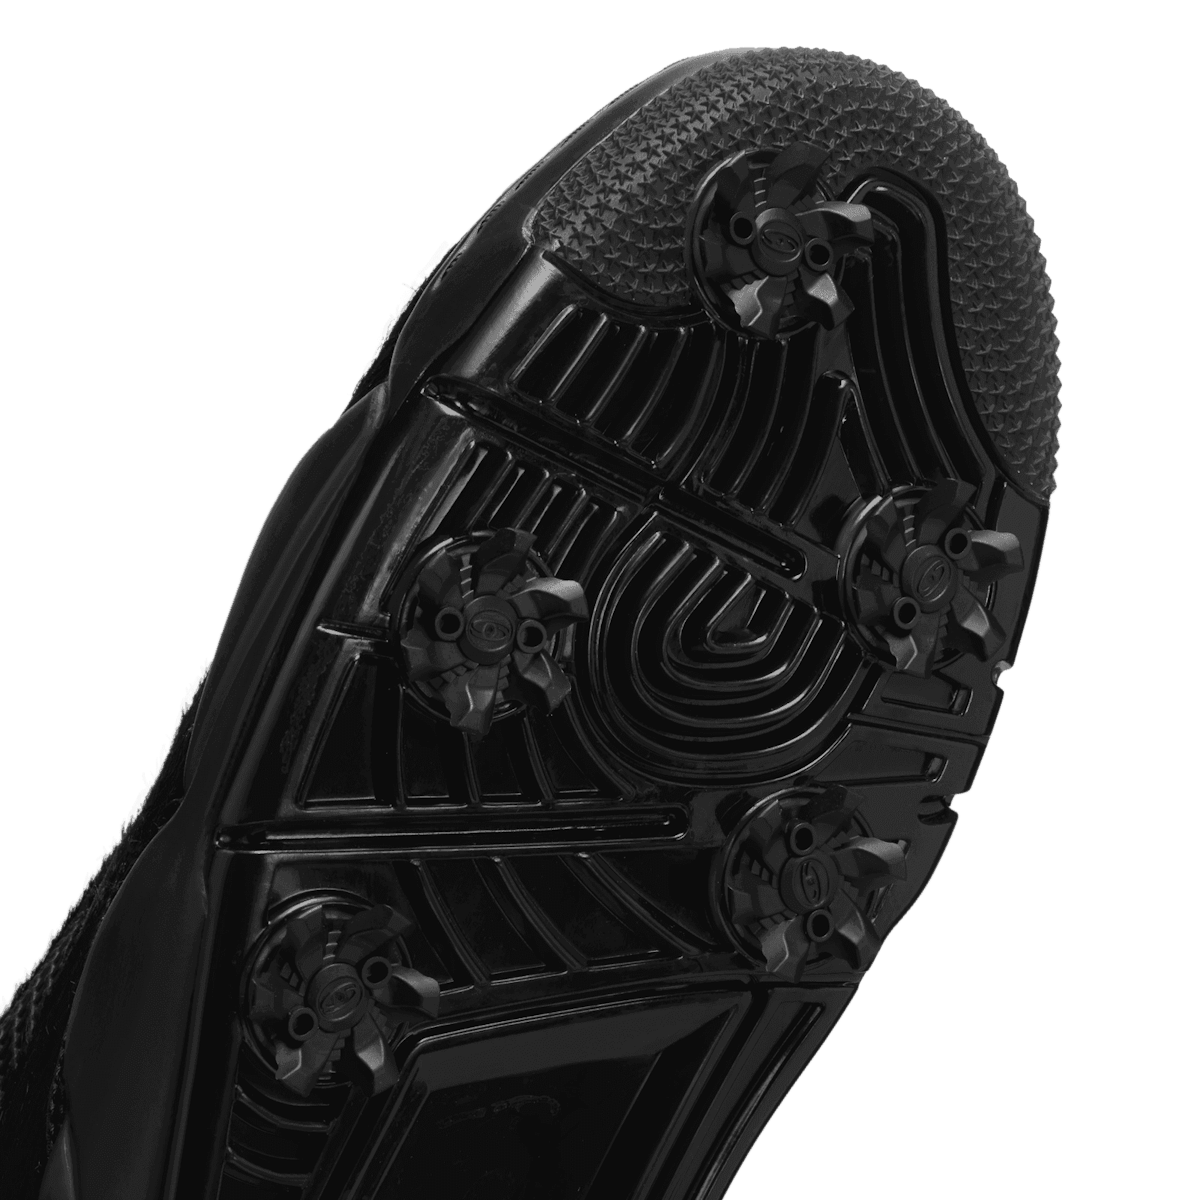 Air Jordan 4 Golf Black Cat CU9981-001 Release Date - SBD